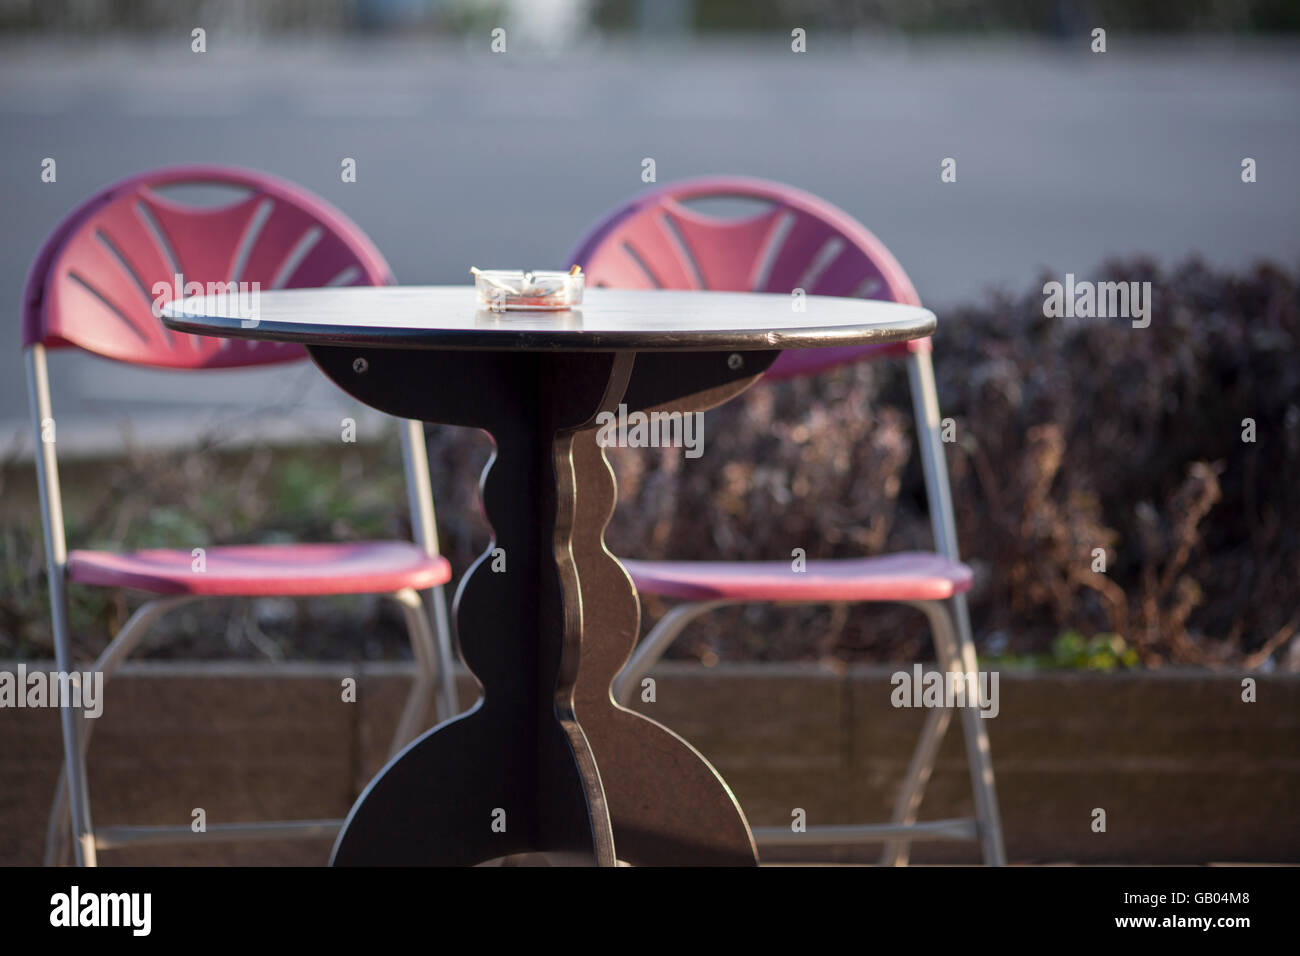 Cafe Tisch und zwei Stühle Stockfoto